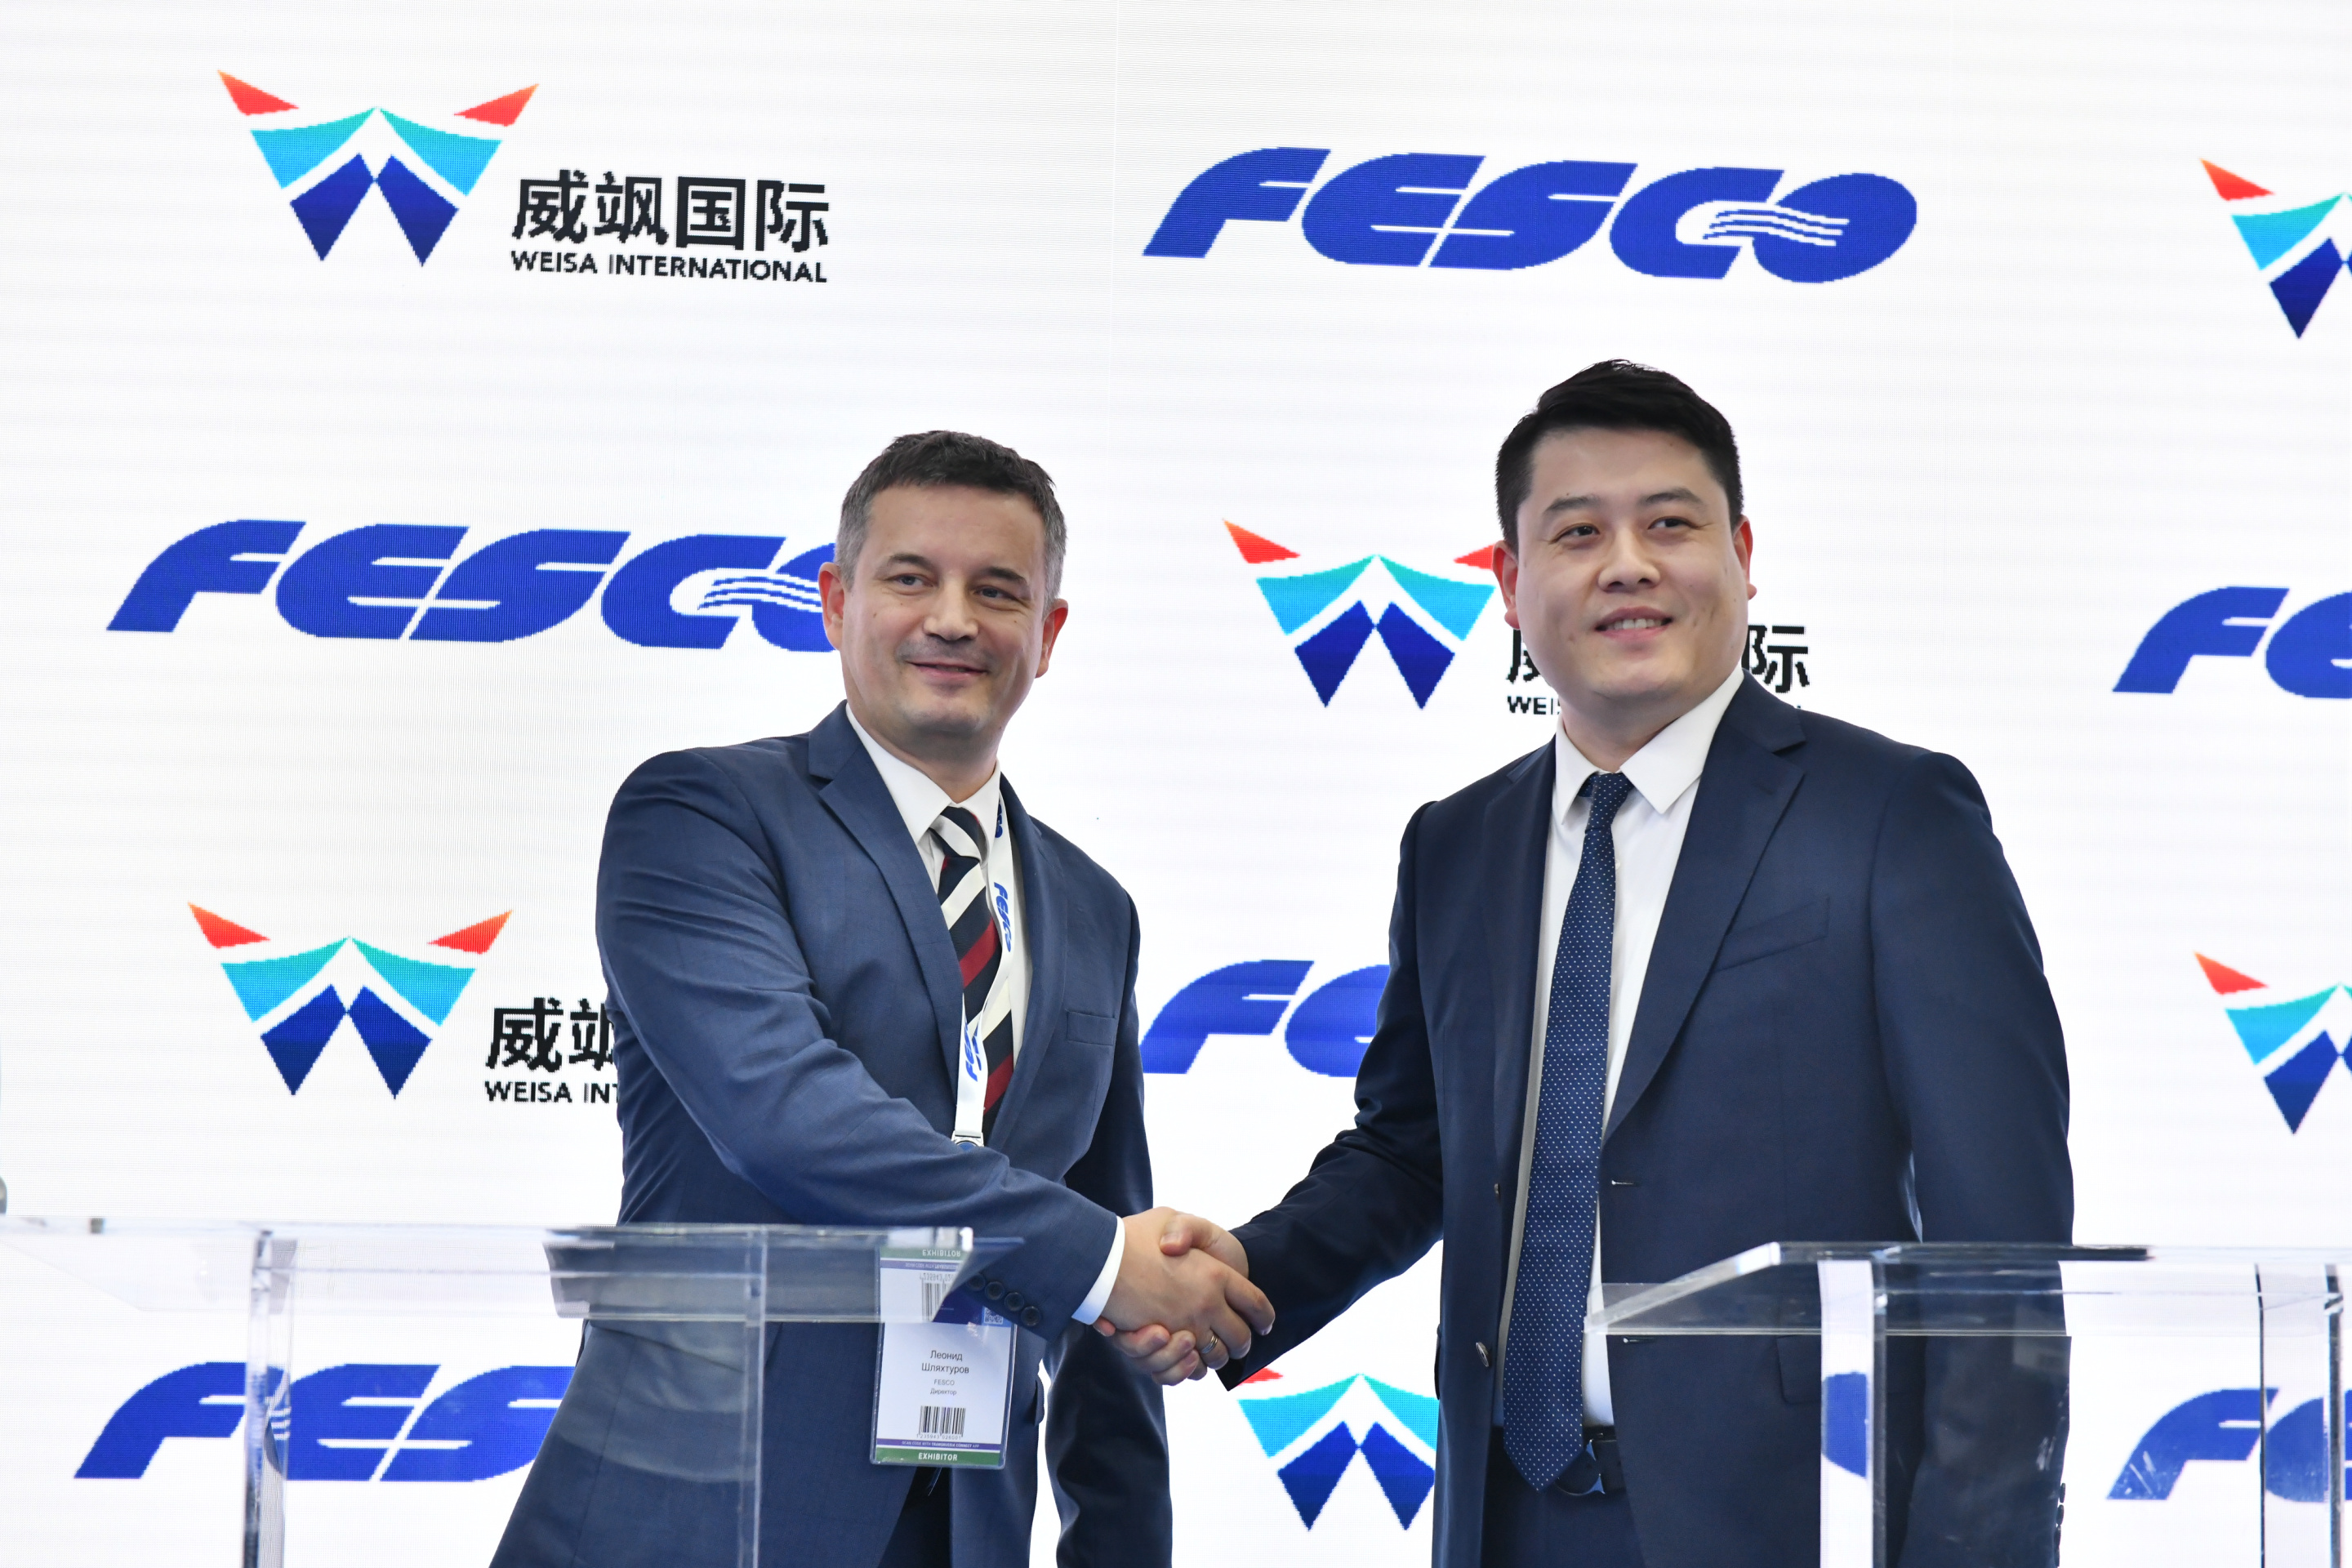 FESCO наладит сотрудничество с китайскими логистическими компаниями в сфере железнодорожных перевозок